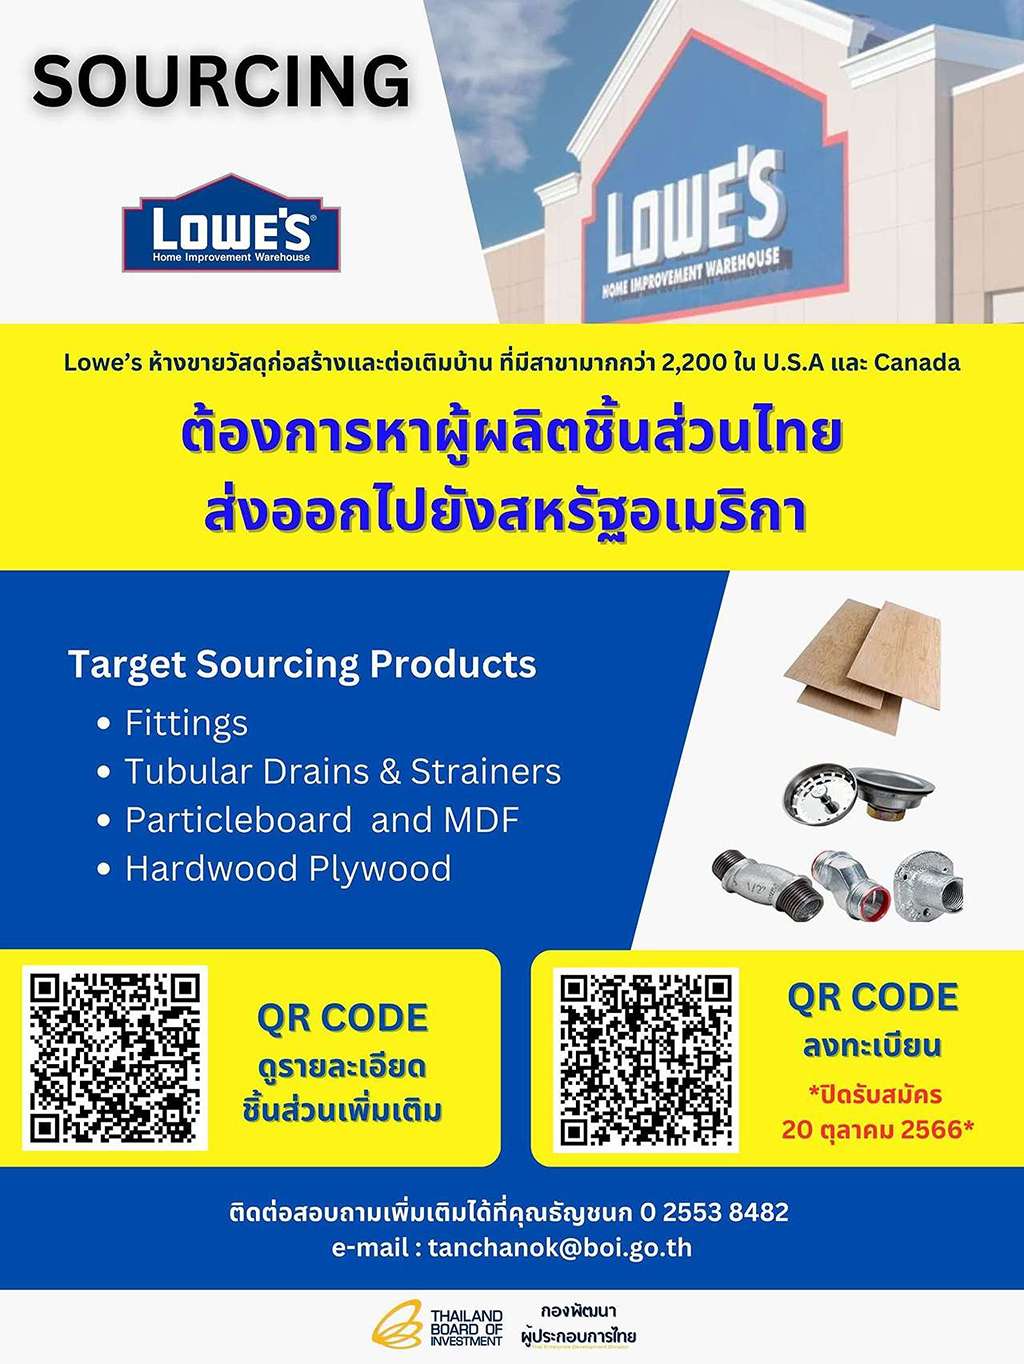 SOURCING ธุรกิจก่อสร้าง 'Lowe’s' ห้างขายวัสดุก่อสร้างและต่อเติมบ้าน ในสหรัฐฯ และแคนาดา ประกาศหาผู้ผลิตชิ้นส่วนไทยส่งออกไปสหรัฐอเมริกา, กองพัฒนาผู้ประกอบการไทย